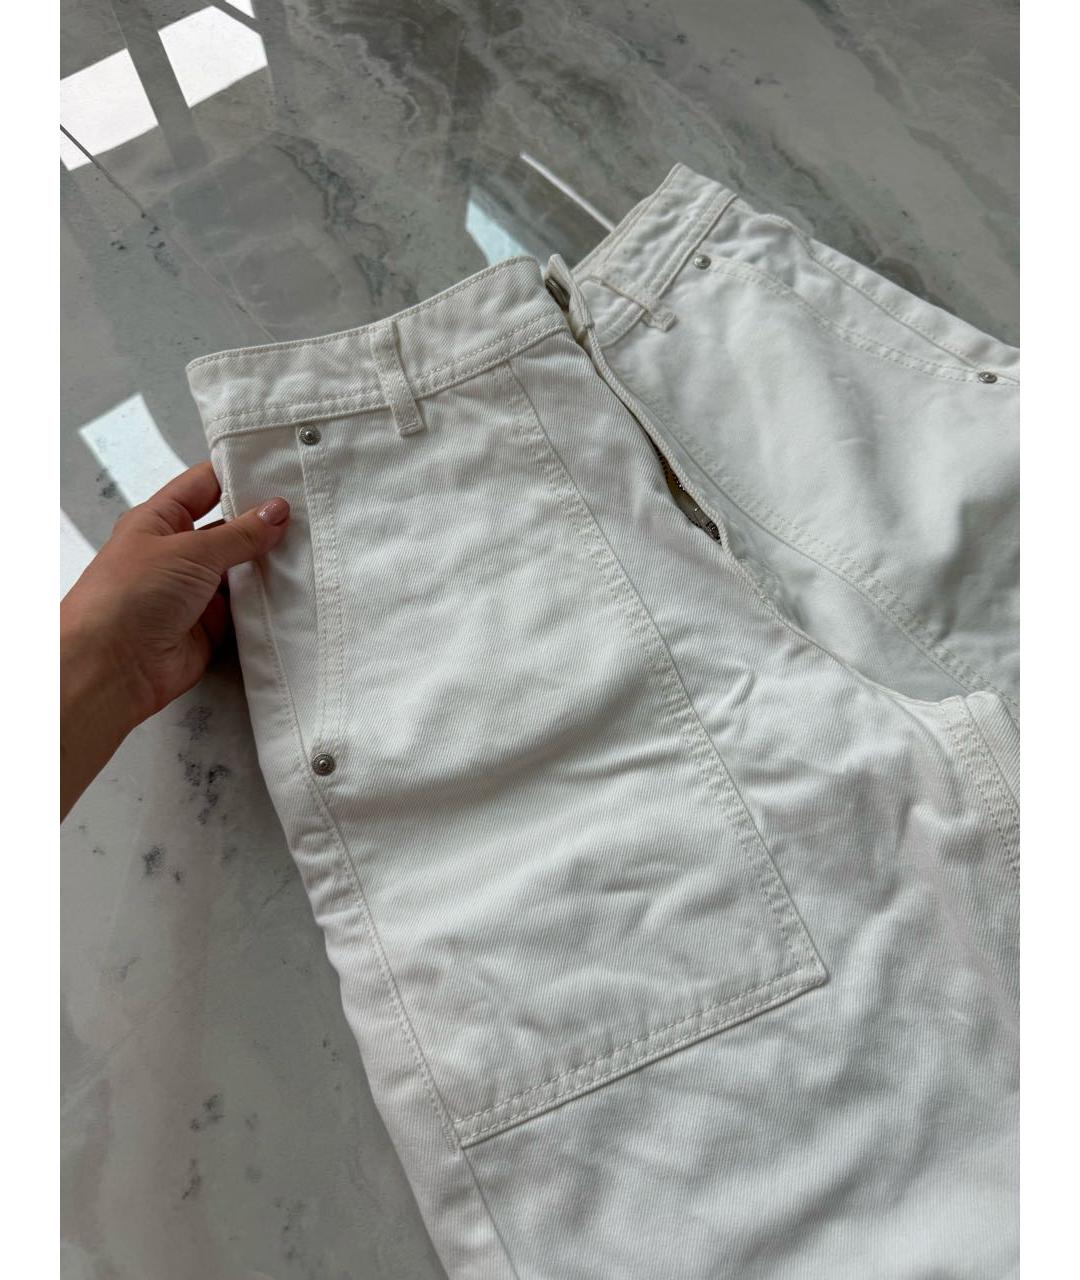 12 STOREEZ Белые хлопковые прямые джинсы, фото 2